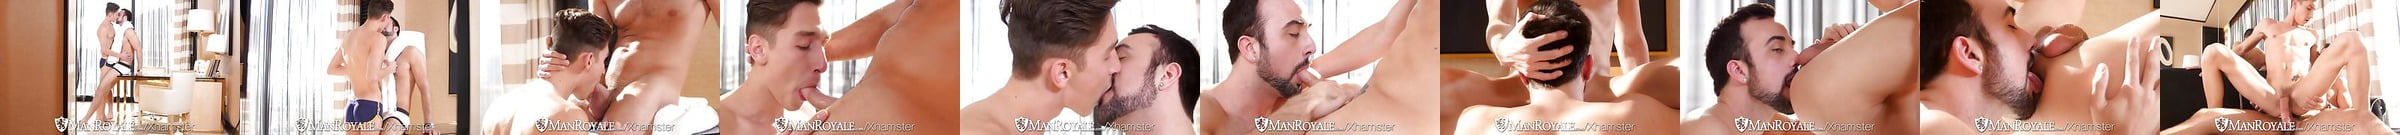 Gayroom Handsome Alex Taylor Fucked After Massage Porn 05 Xhamster